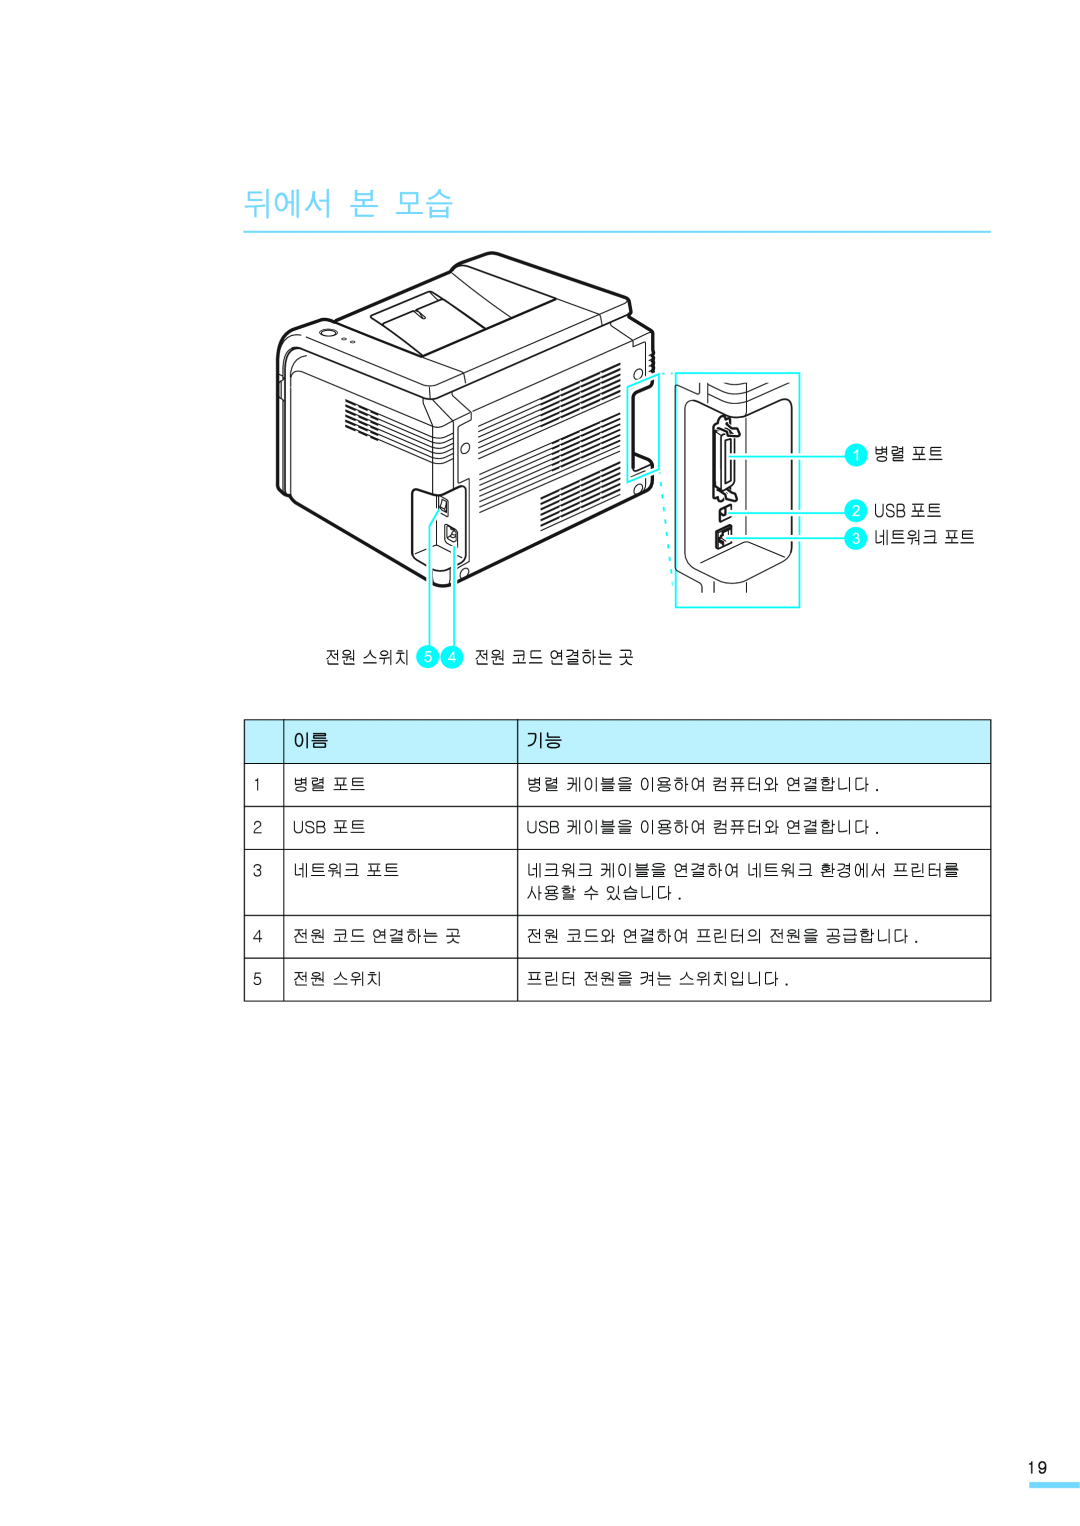 Samsung ML-2571N manual 뒤에서 본 모습, 병렬 포트 Usb 포트 네트워크 포트, 전원 스위치, 전원 코드 연결하는 곳 